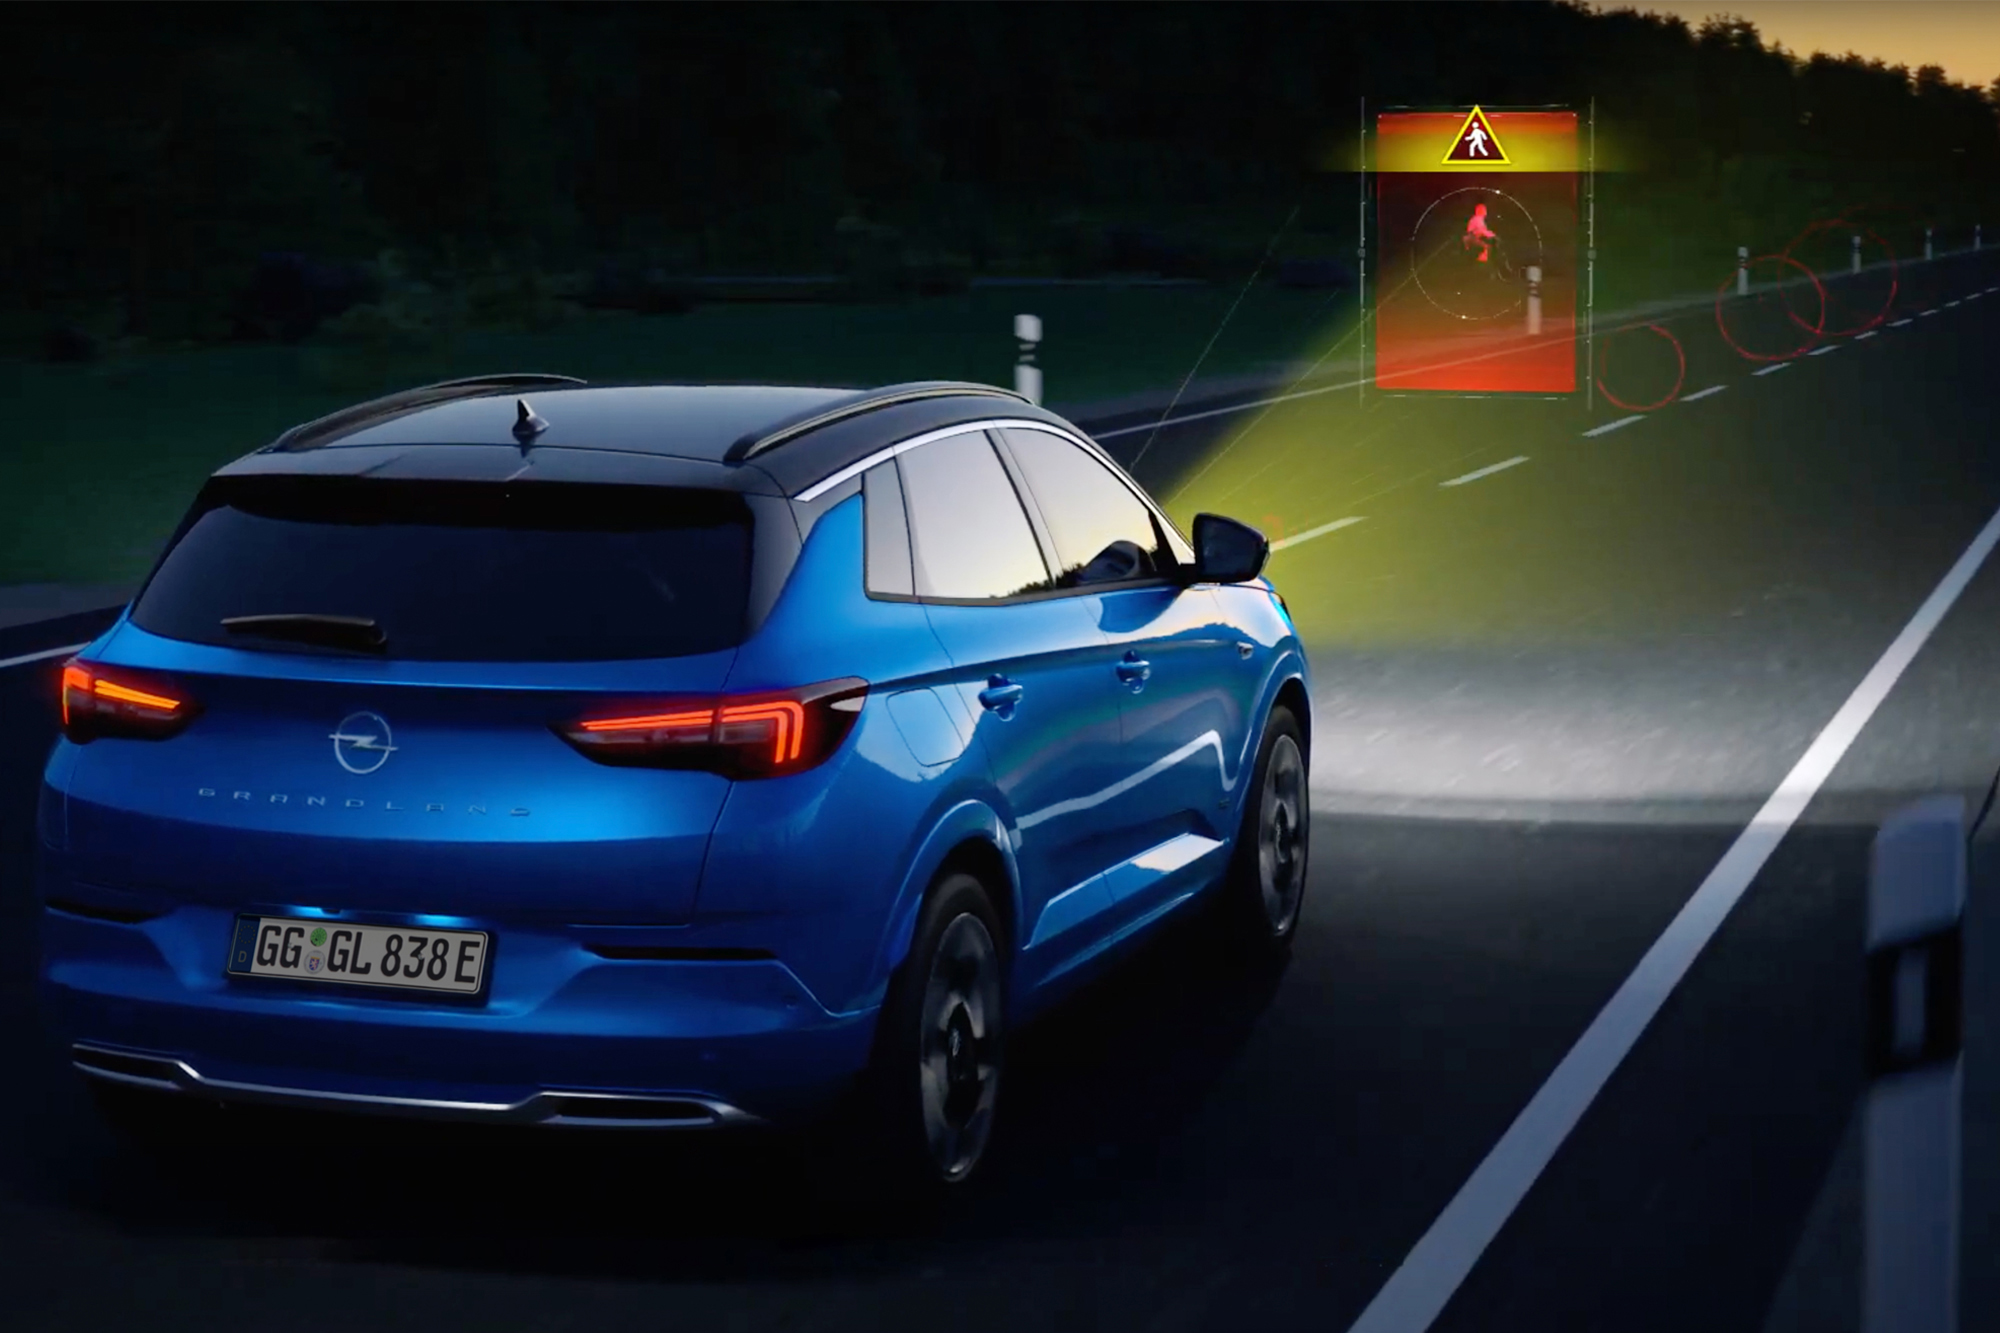 Σύστημα Night Vision στο Νέο Opel Grandland